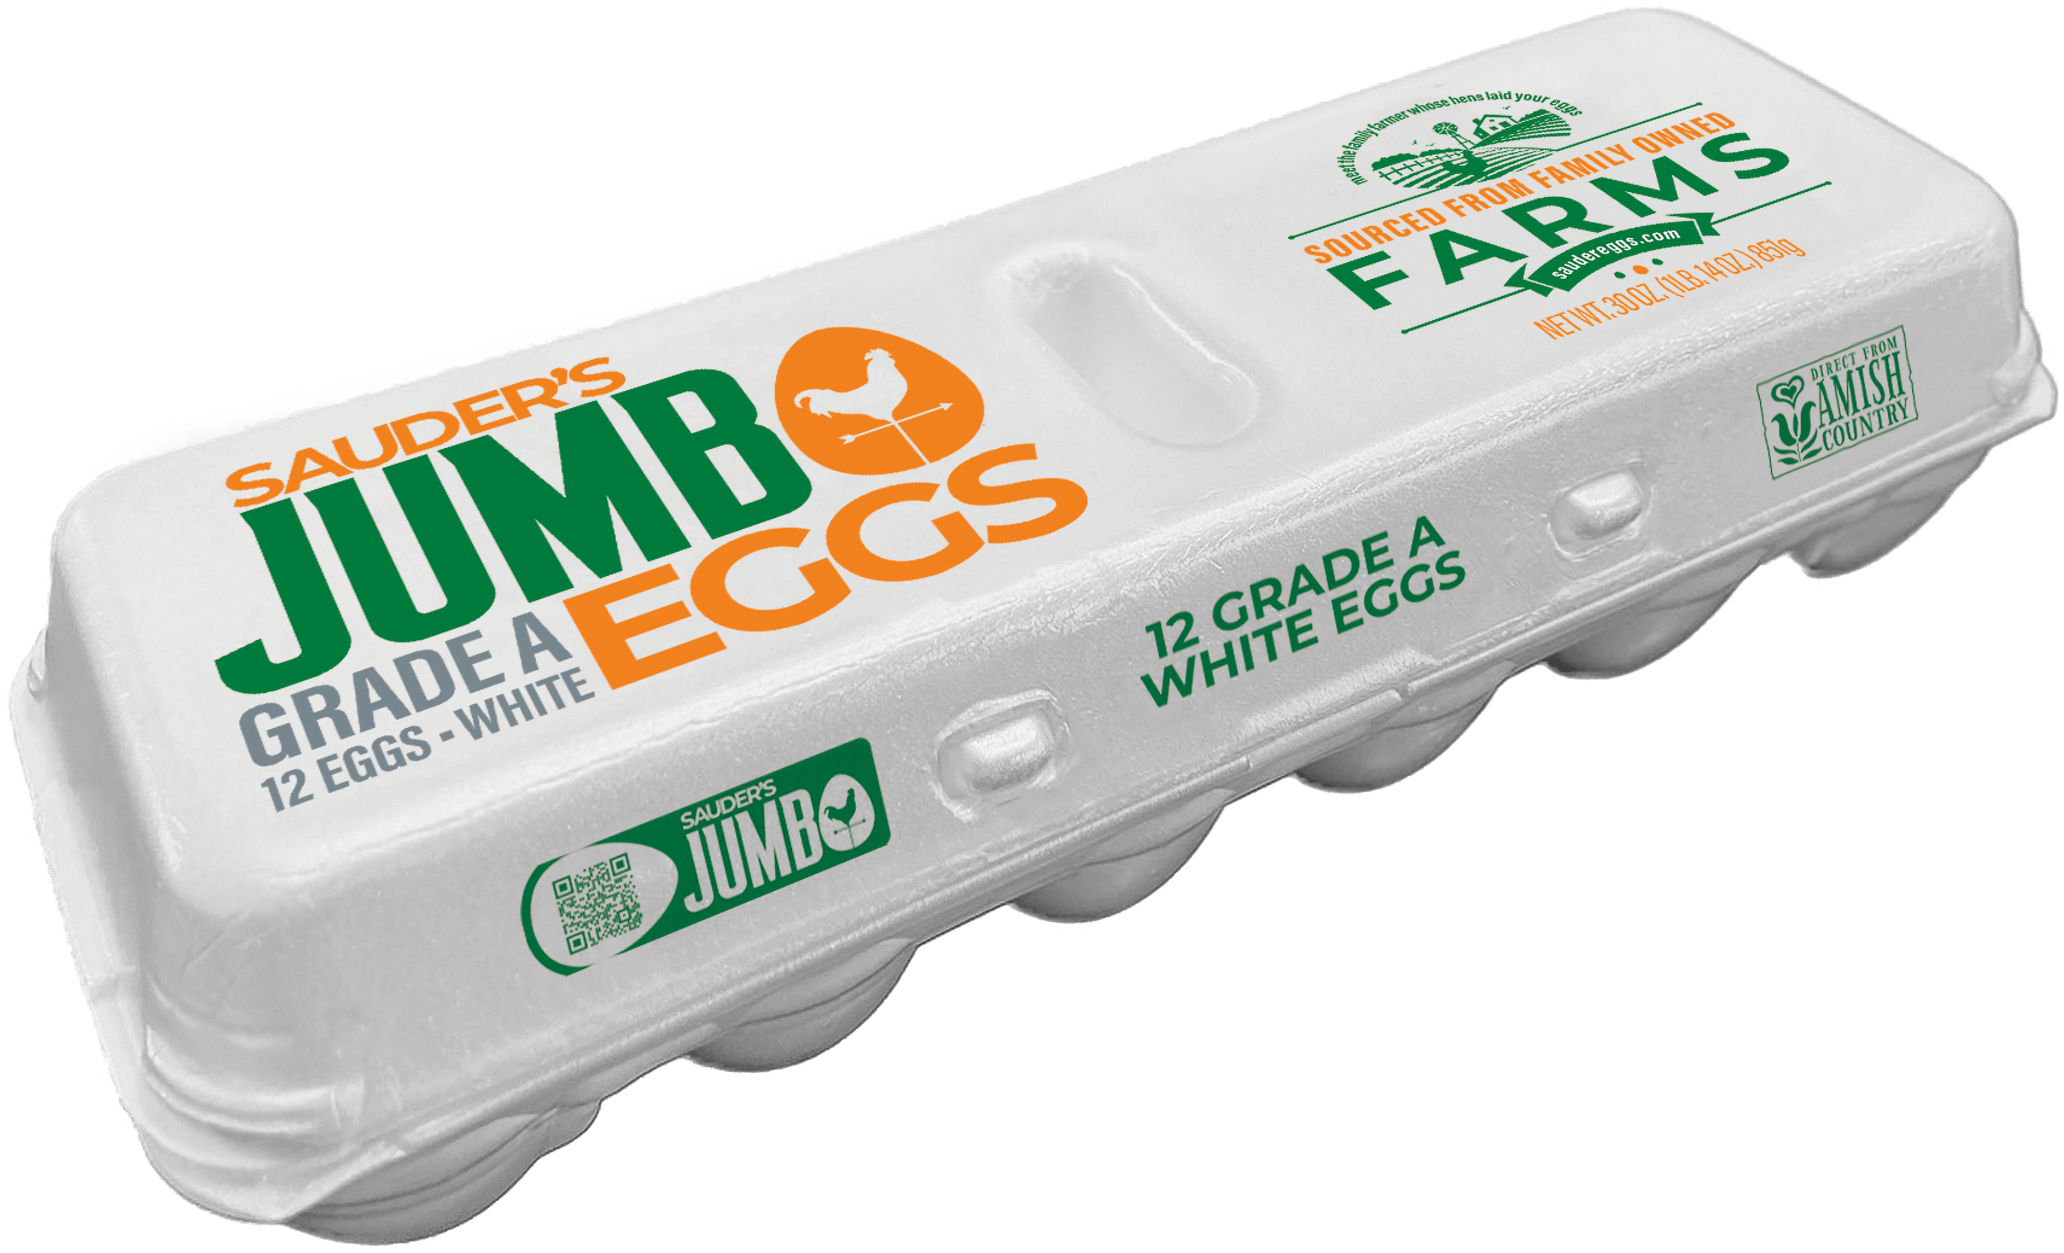 Sauder jumbo grade A white egg carton